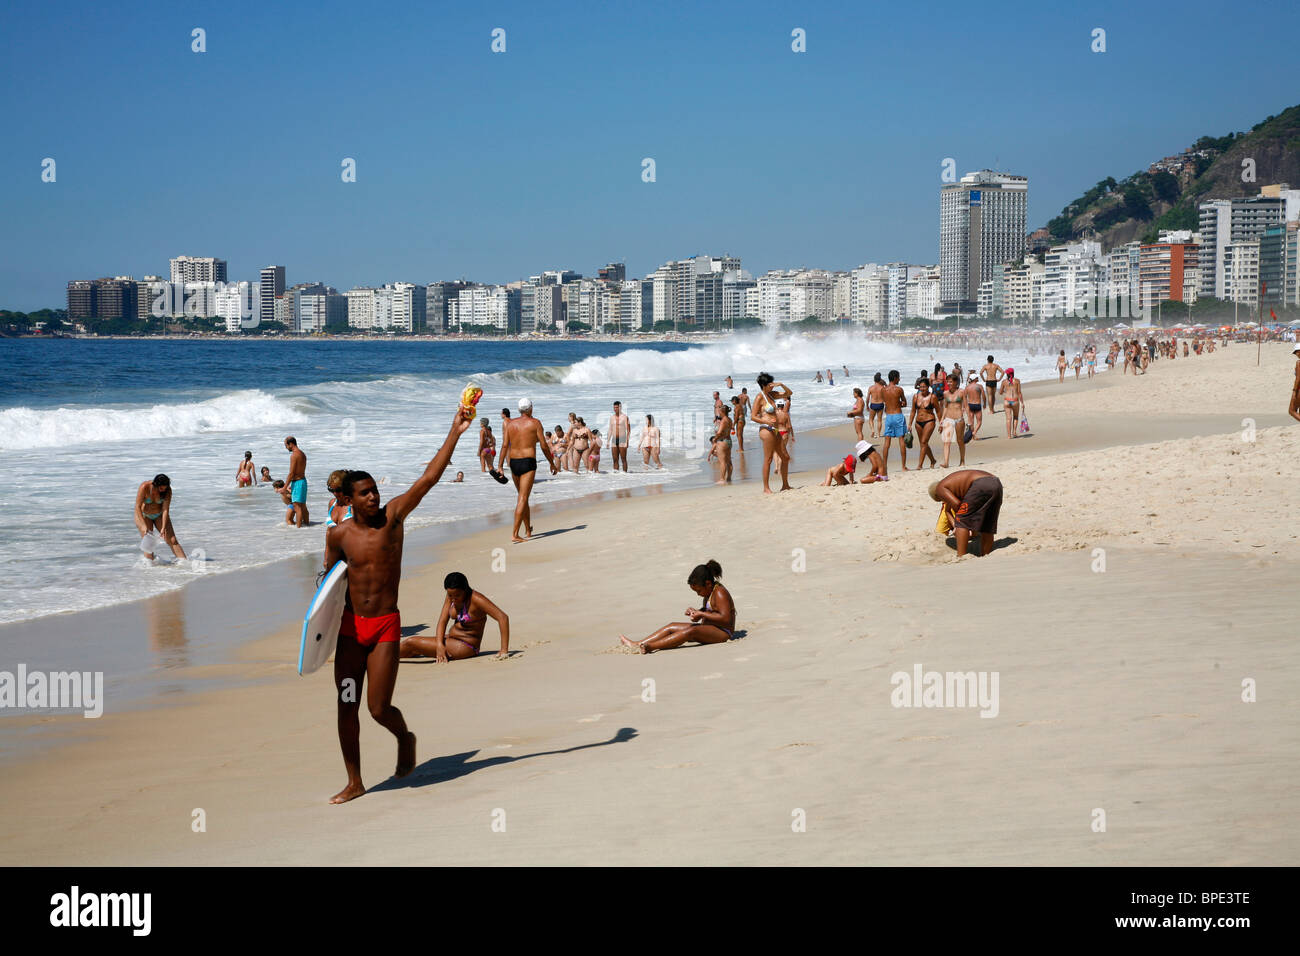 La plage de Copacabana, Rio de Janeiro, Brésil. Banque D'Images